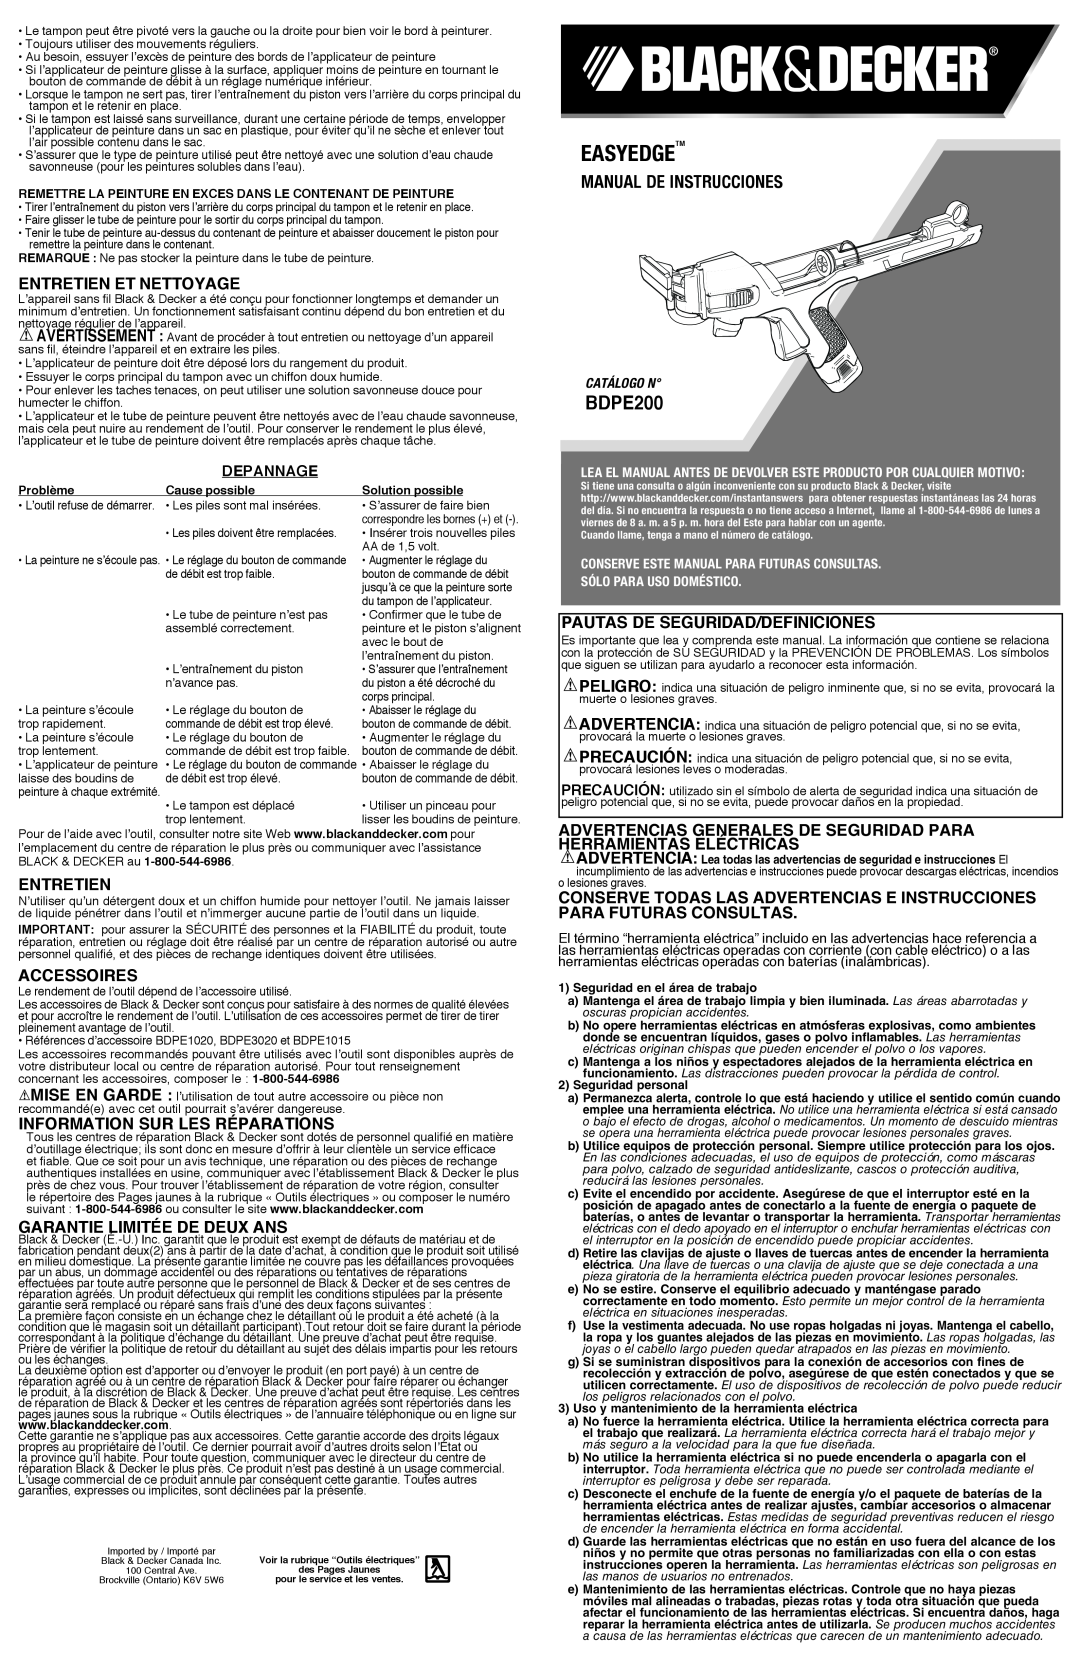 Black & Decker BDPE200B Entretien Et Nettoyage, Accessoires, Information sur les réparations, Garantie Limitée De Deux Ans 